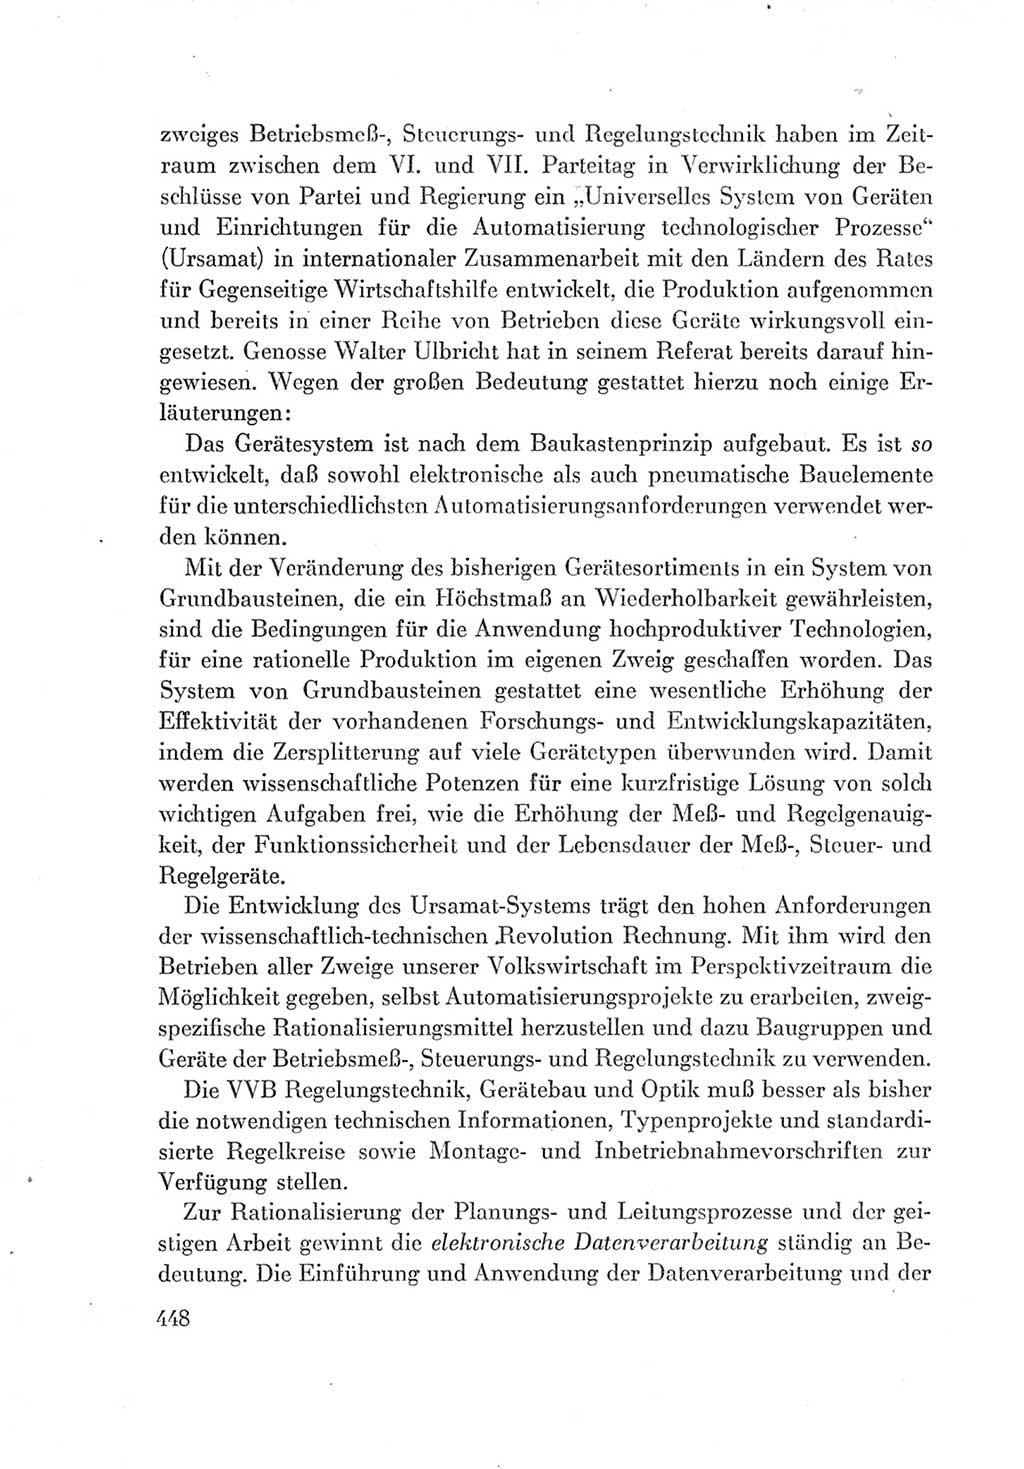 Protokoll der Verhandlungen des Ⅶ. Parteitages der Sozialistischen Einheitspartei Deutschlands (SED) [Deutsche Demokratische Republik (DDR)] 1967, Band Ⅰ, Seite 448 (Prot. Verh. Ⅶ. PT SED DDR 1967, Bd. Ⅰ, S. 448)